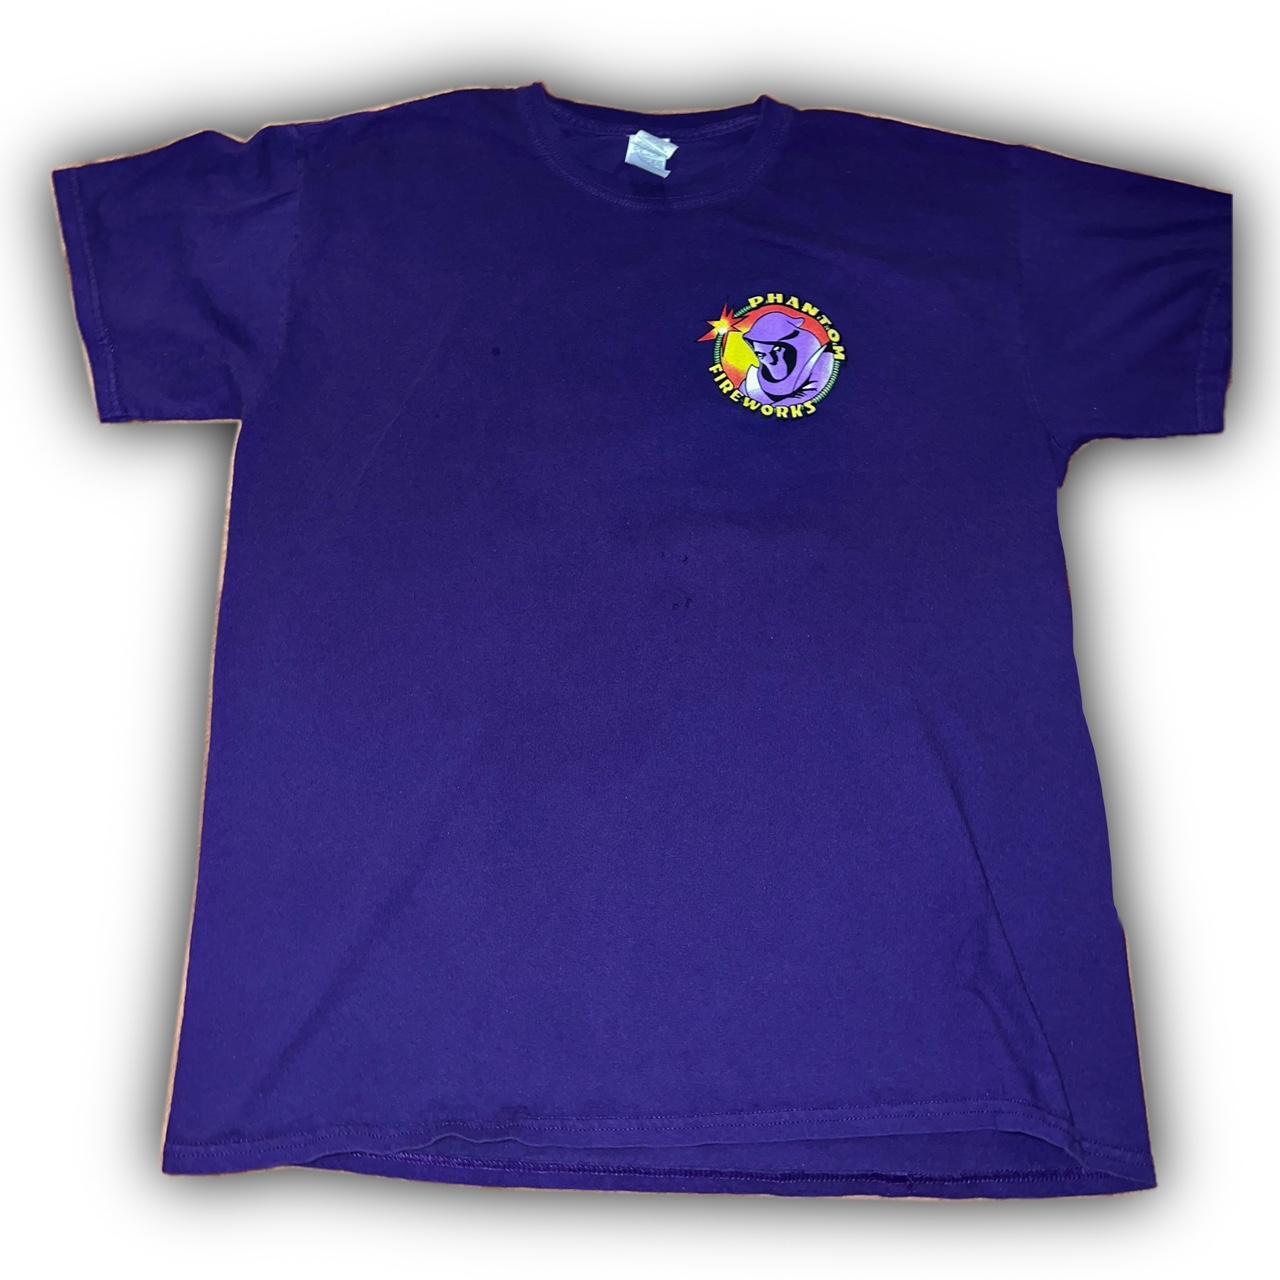 Vintage Phantom Fireworks Shirt 🎆🧨 Size :... - Depop